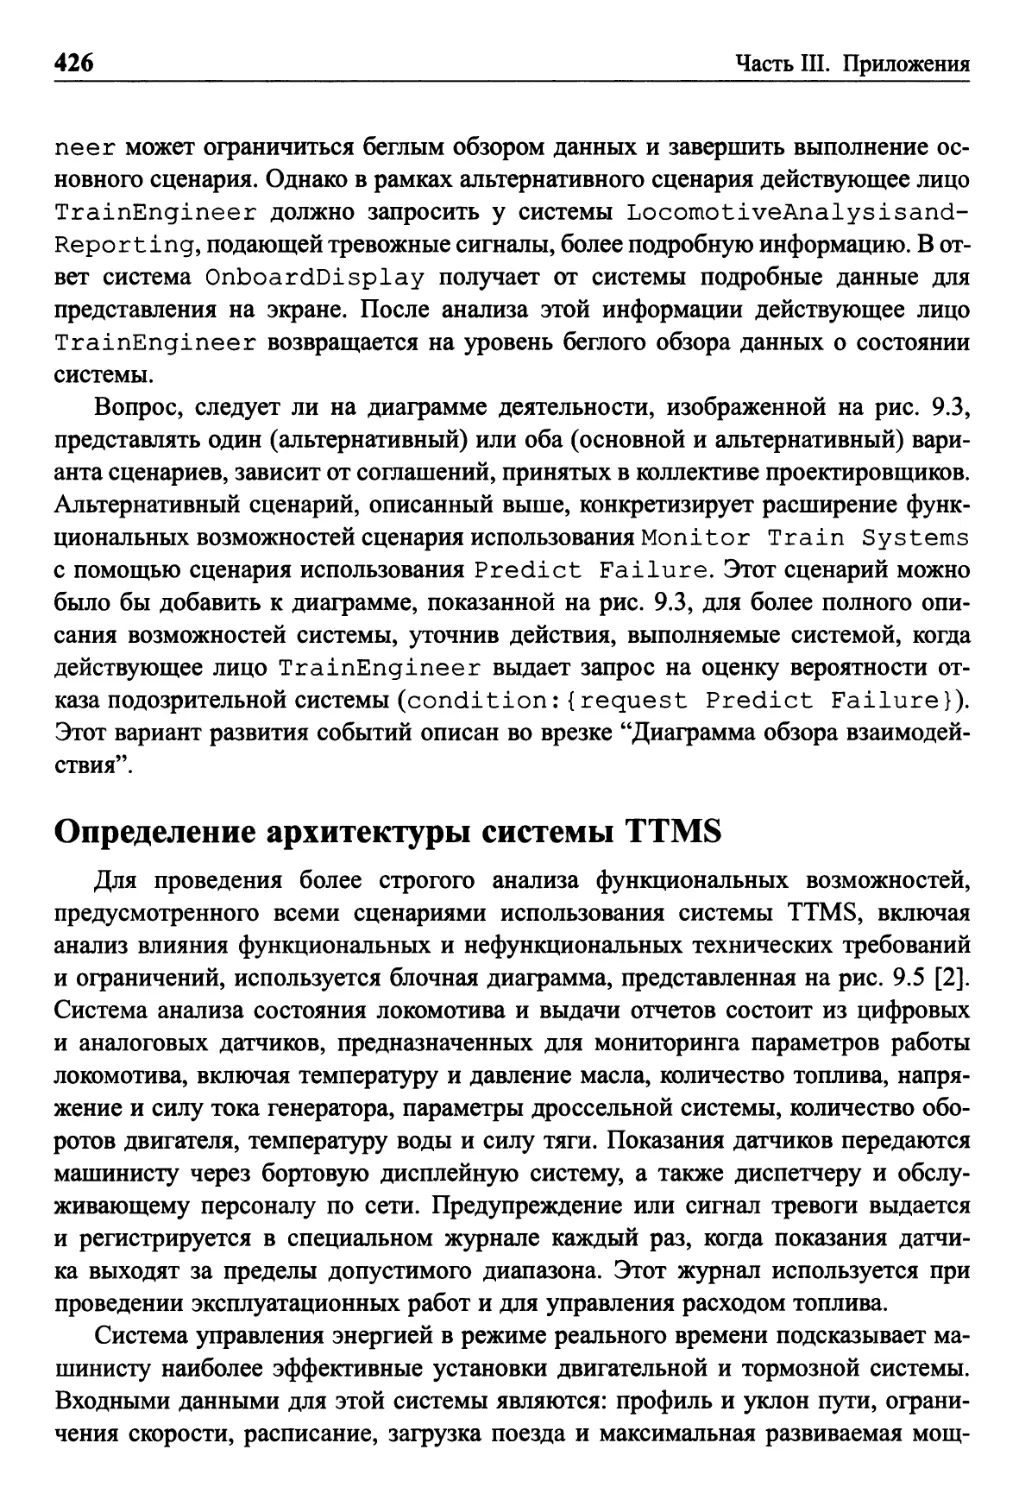 Определение архитектуры системы TTMS